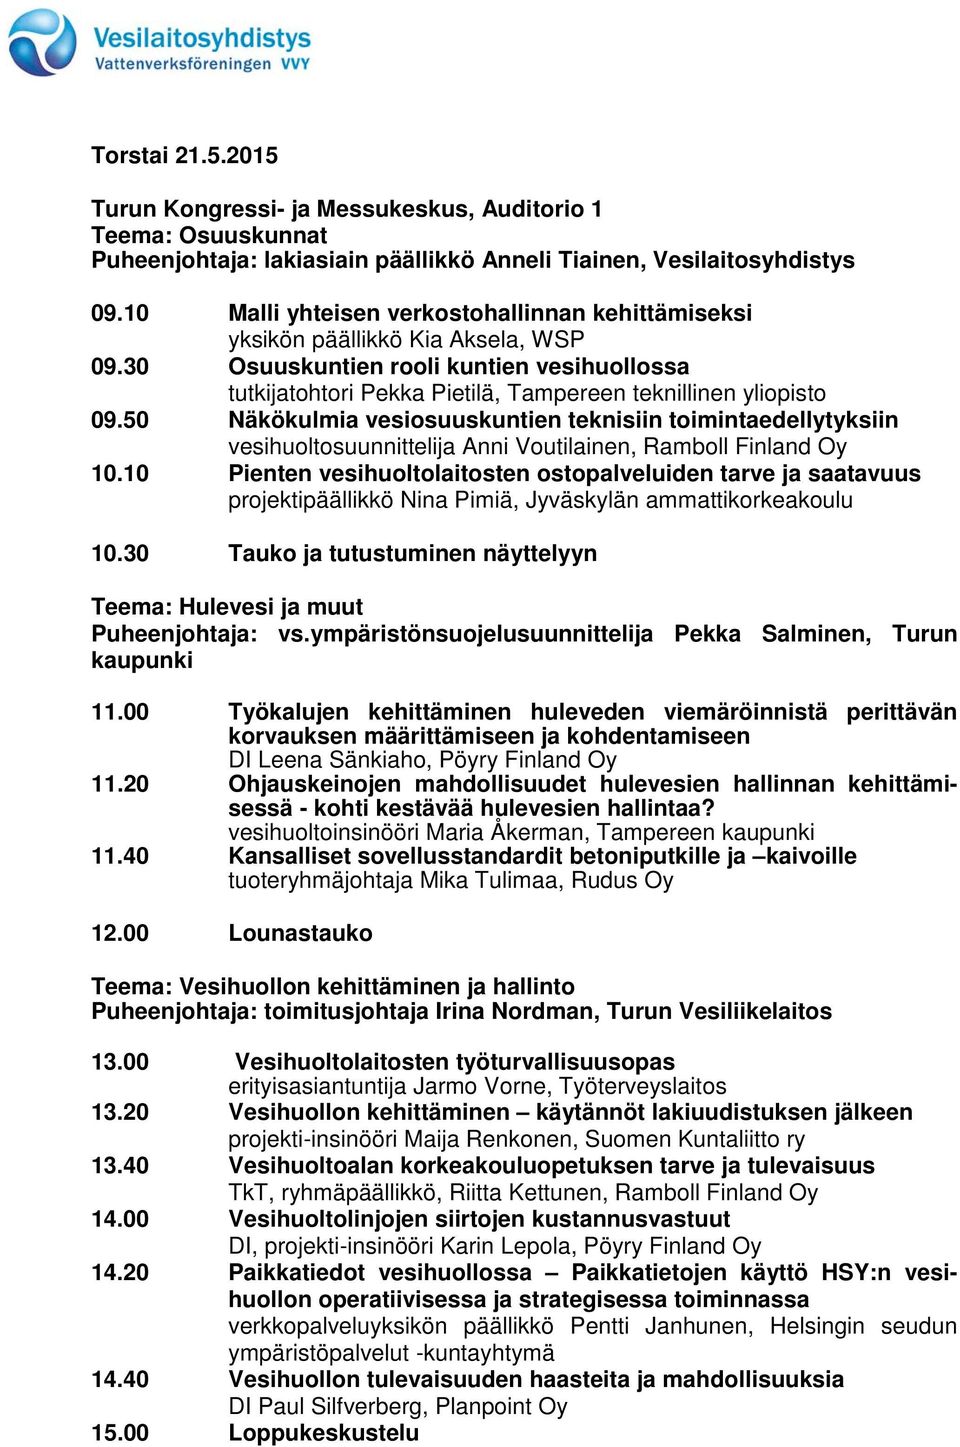 50 Näkökulmia vesiosuuskuntien teknisiin toimintaedellytyksiin vesihuoltosuunnittelija Anni Voutilainen, Ramboll Finland Oy 10.